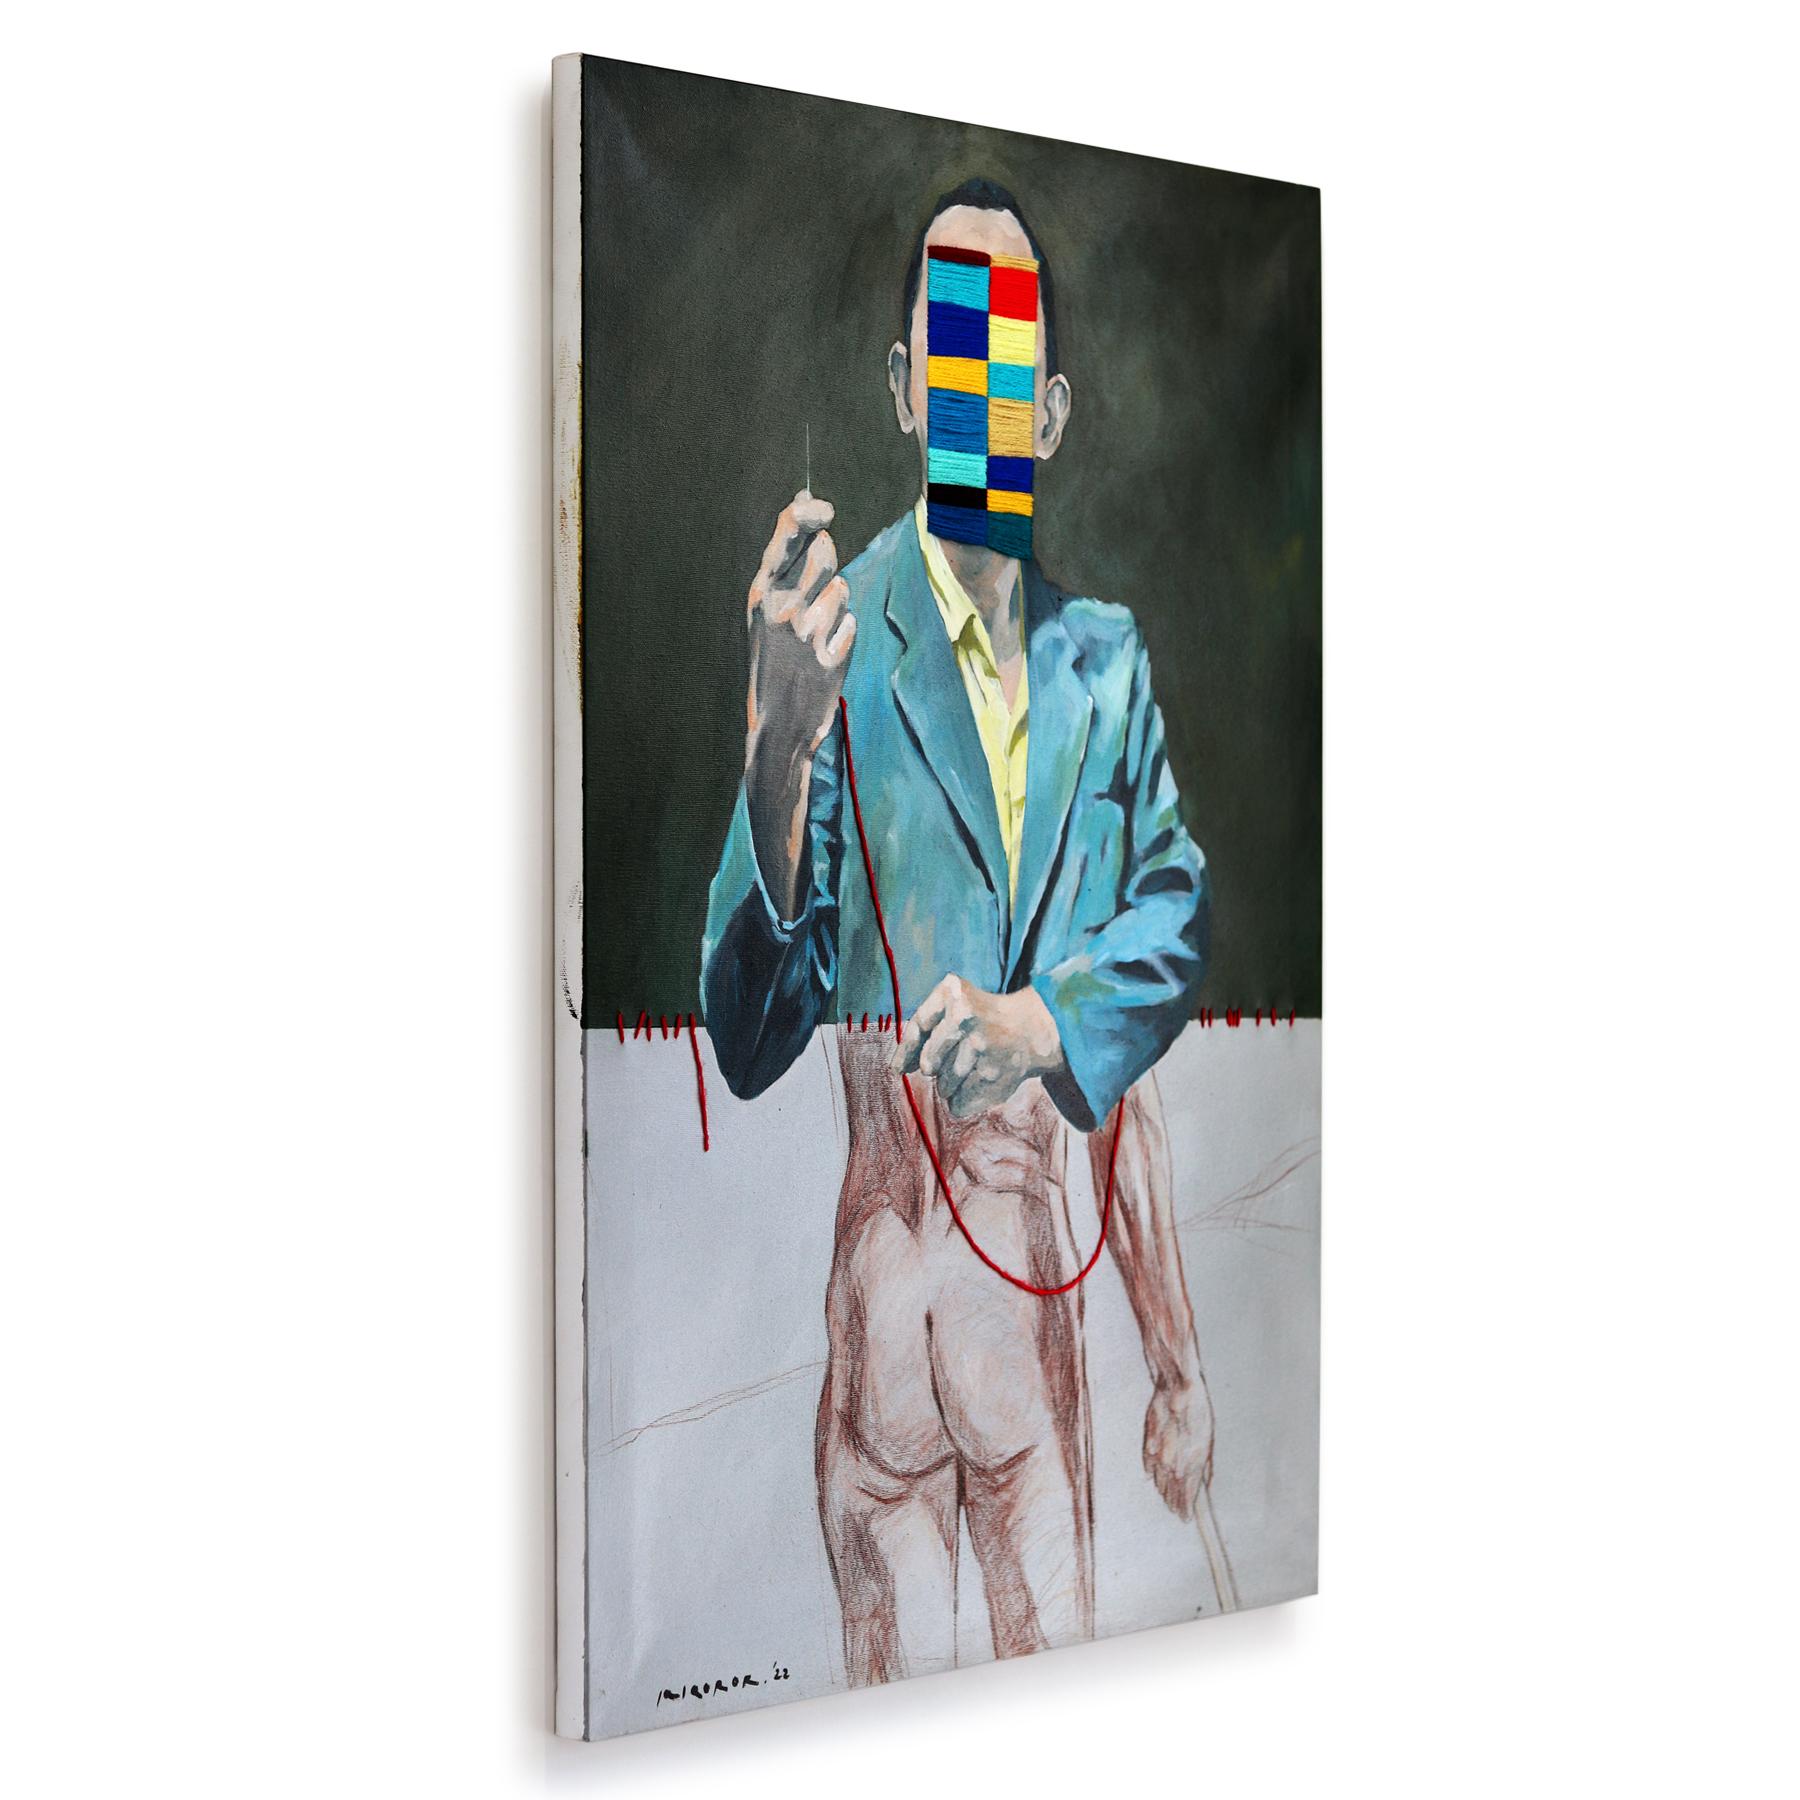 Die surrealen figurativen Gemälde von Iqi Qoror bestechen durch ihre erdige Farbpalette, die durch fluoreszierende Textilstickereien aufgelockert wird. Seine Werke kreisen um Fragen des Vertrauens, durchsetzt mit Fragmenten der Moderne, denen er